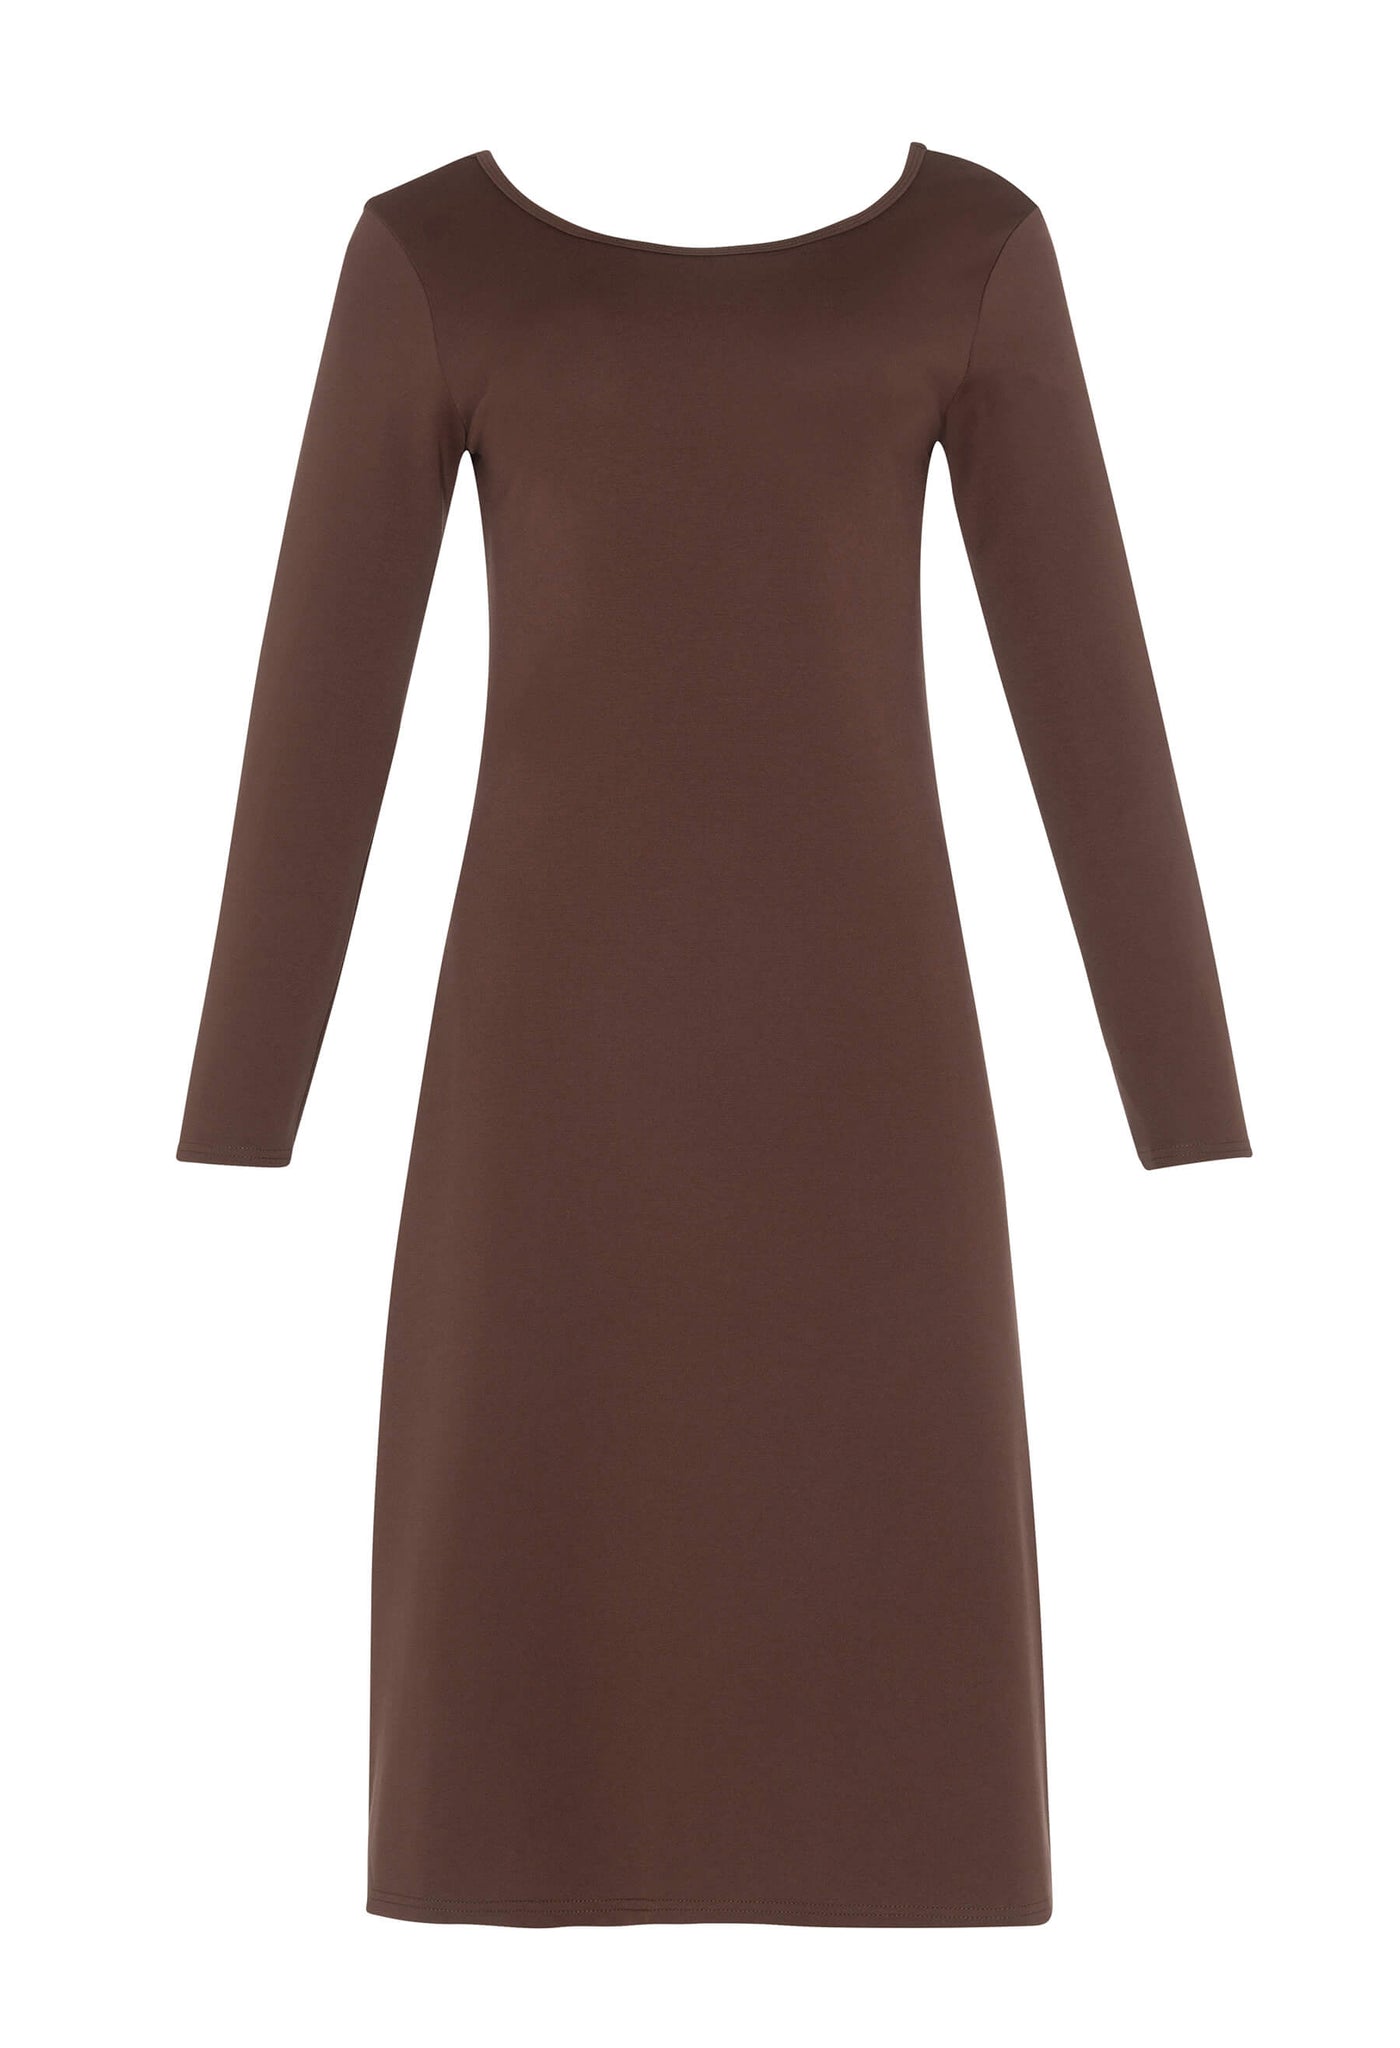 Découvrez la robe noire Amalia conçue par Katy St-Laurent. Cette robe marron de longueur midi est élégante et offre un look raffiné.